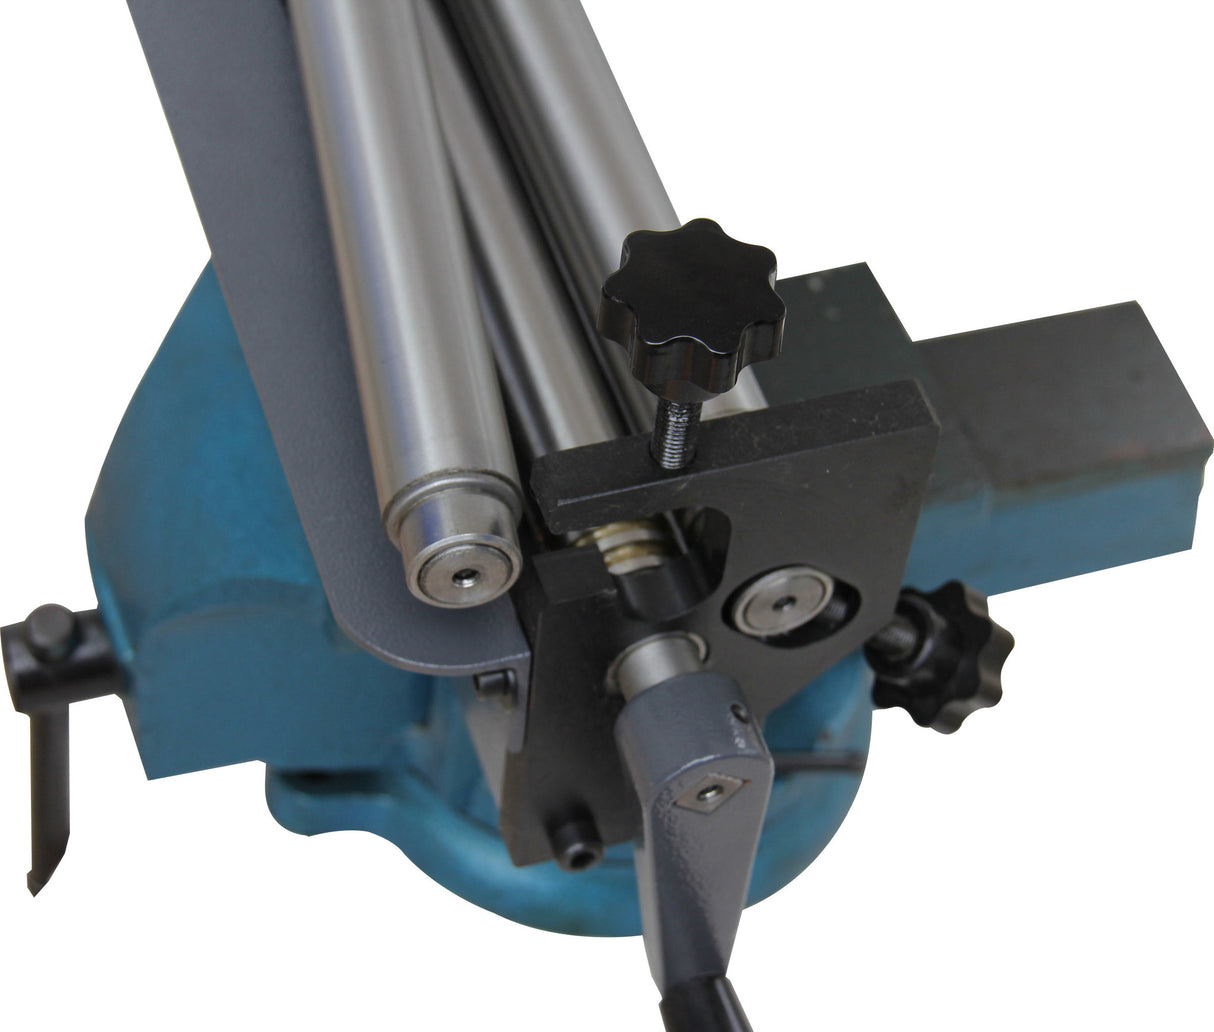 Kaka Industrial Sj300 12 Inch Forming Width Slip Roll, 20 Gauge Capacity